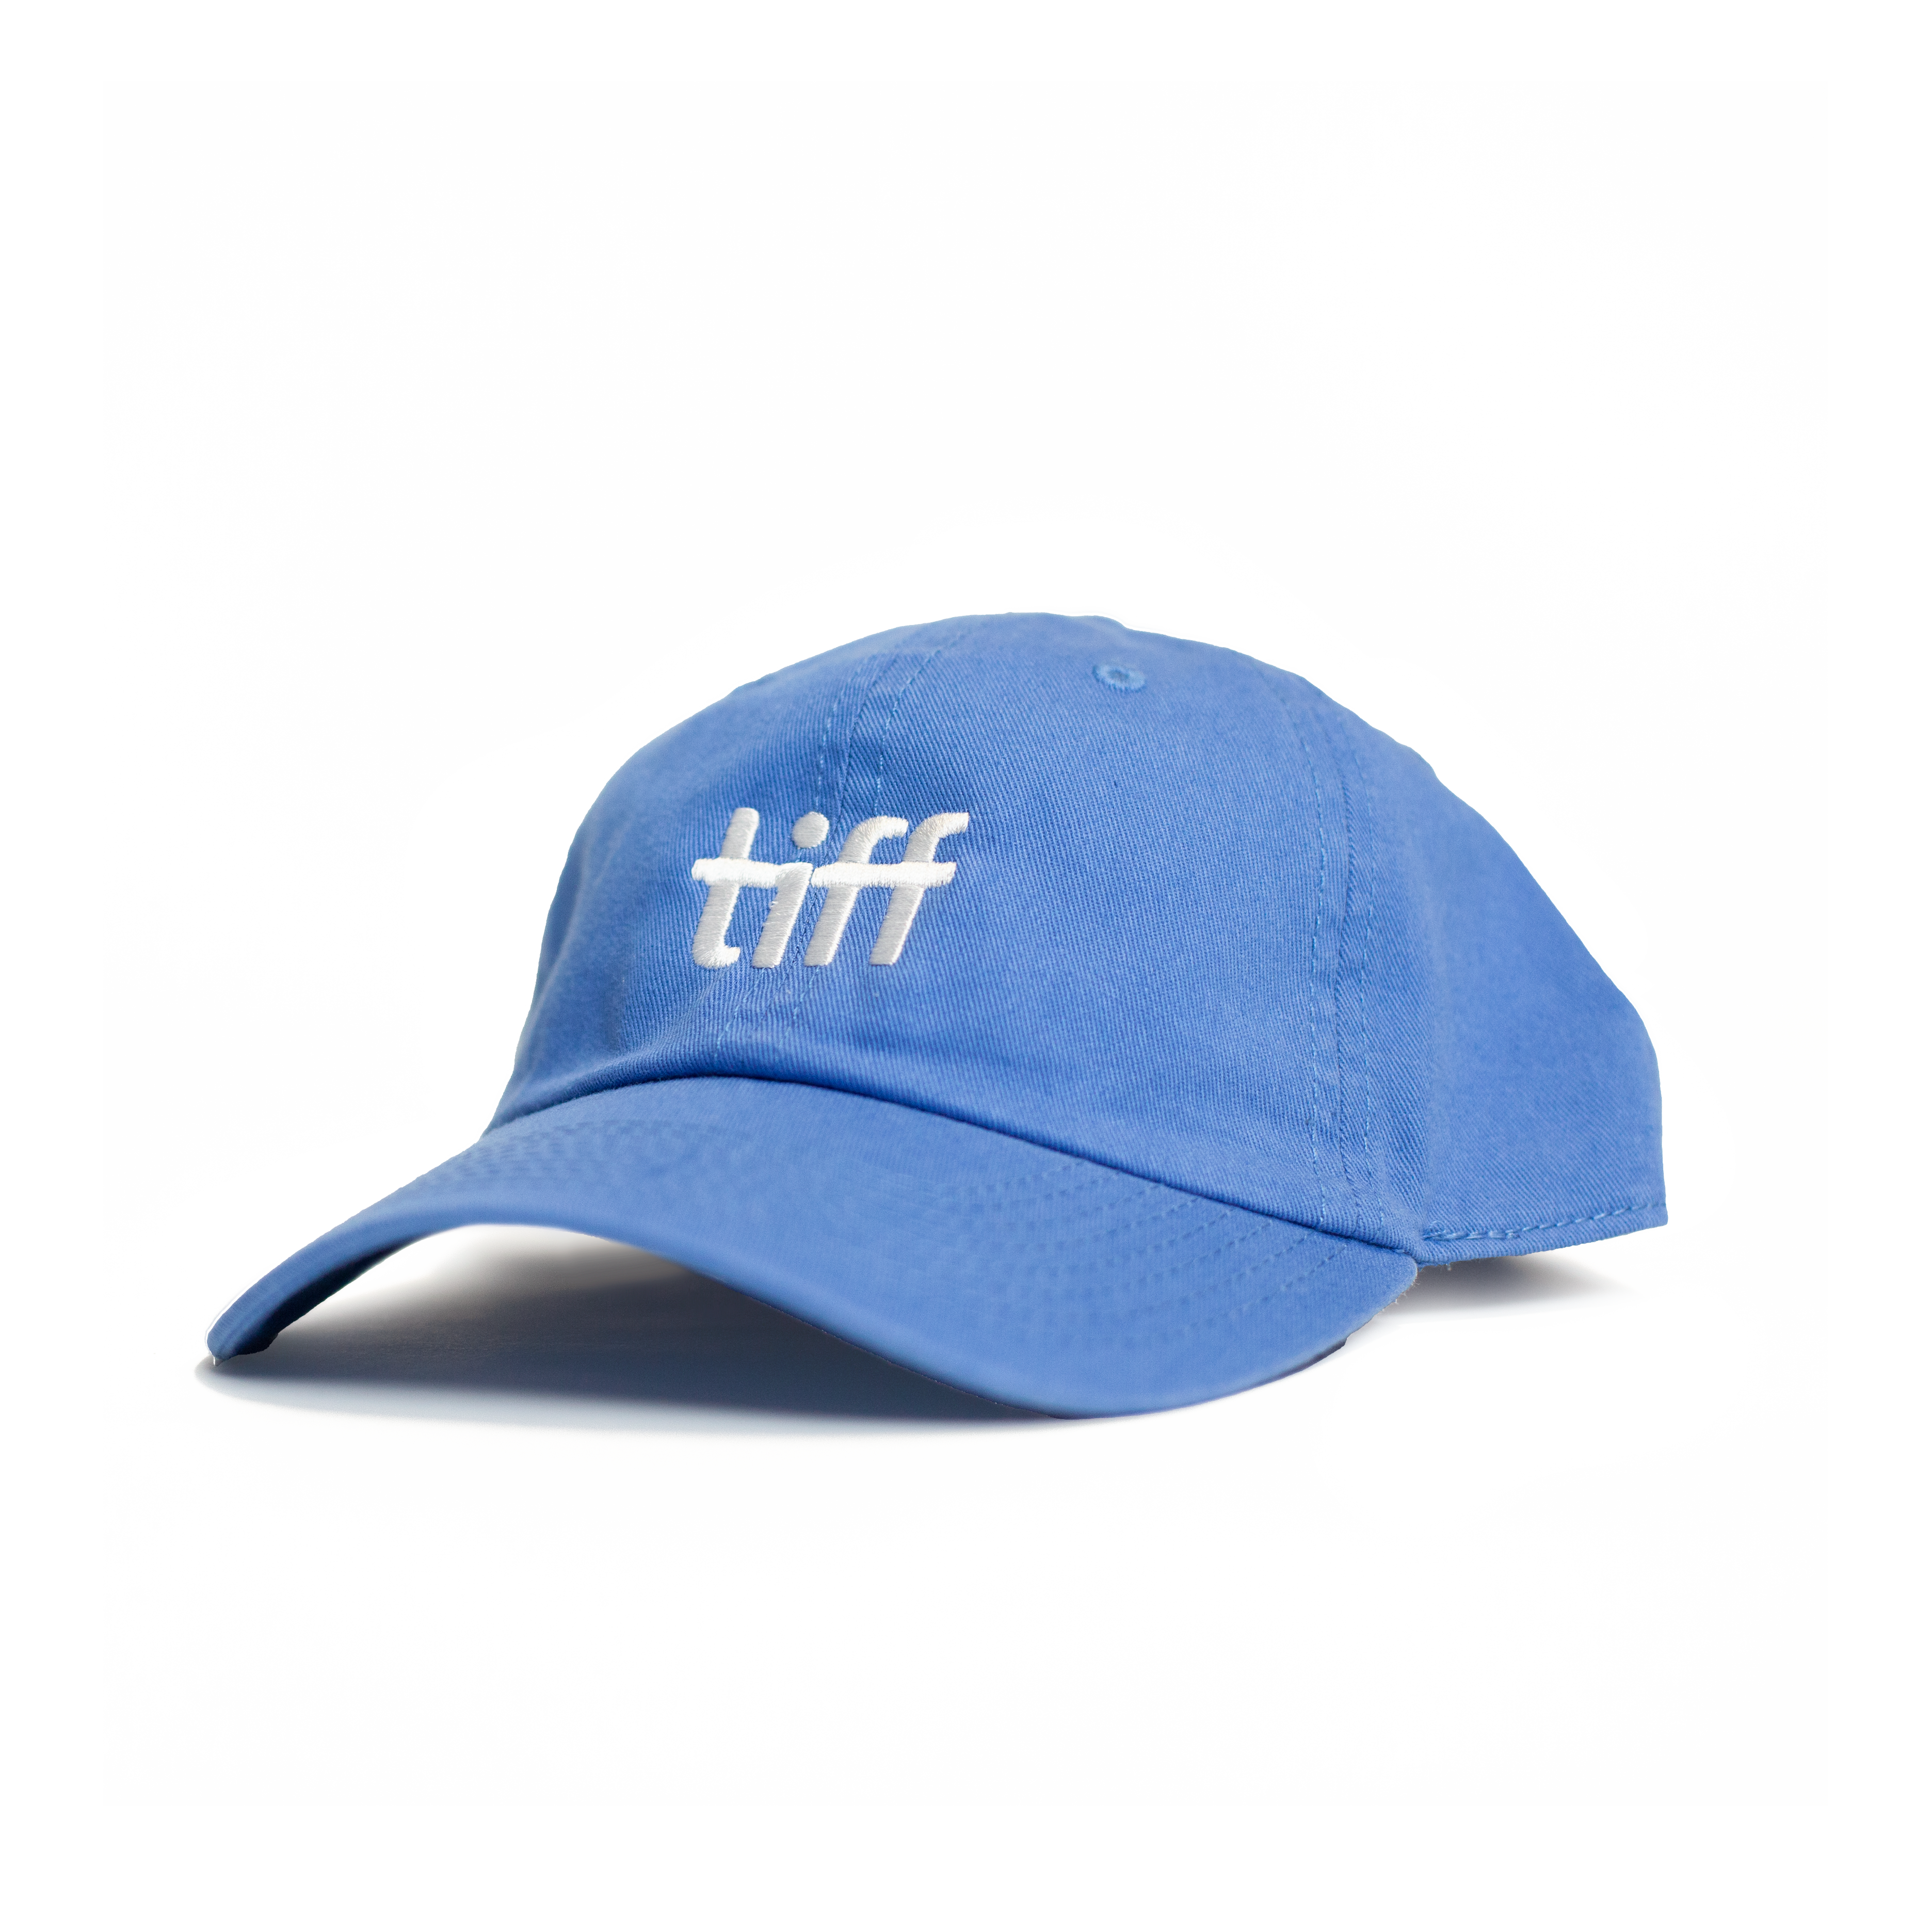 Blue TIFF cap